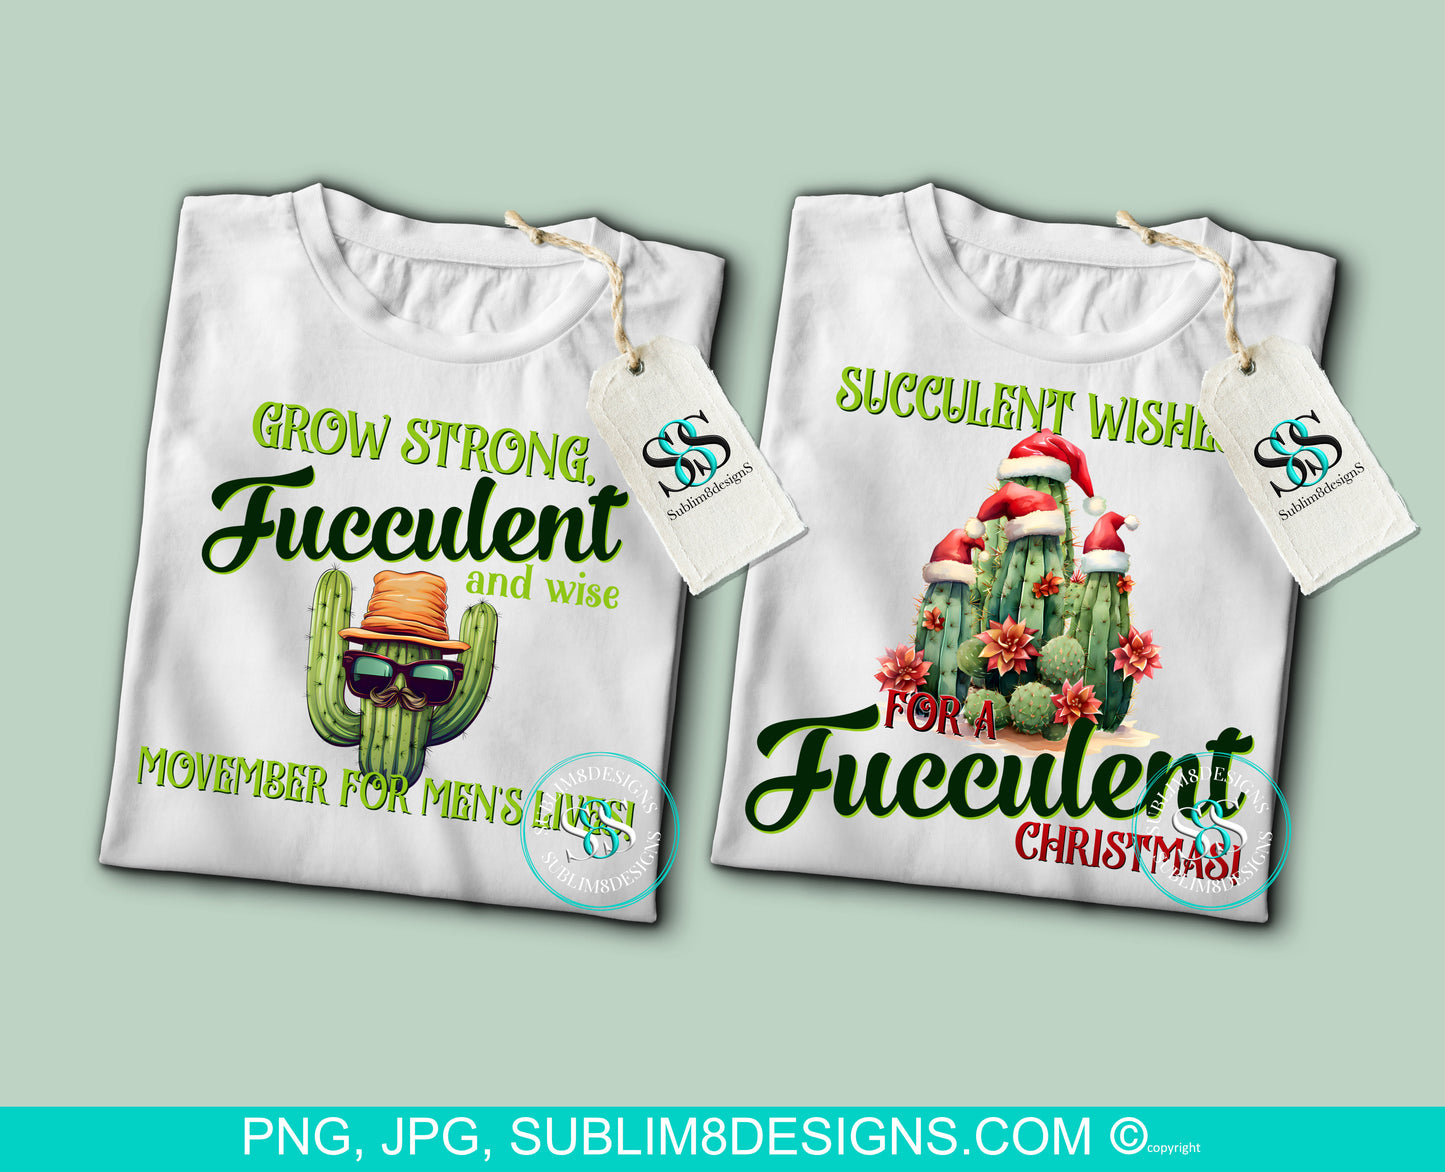 Fucculent Succulents